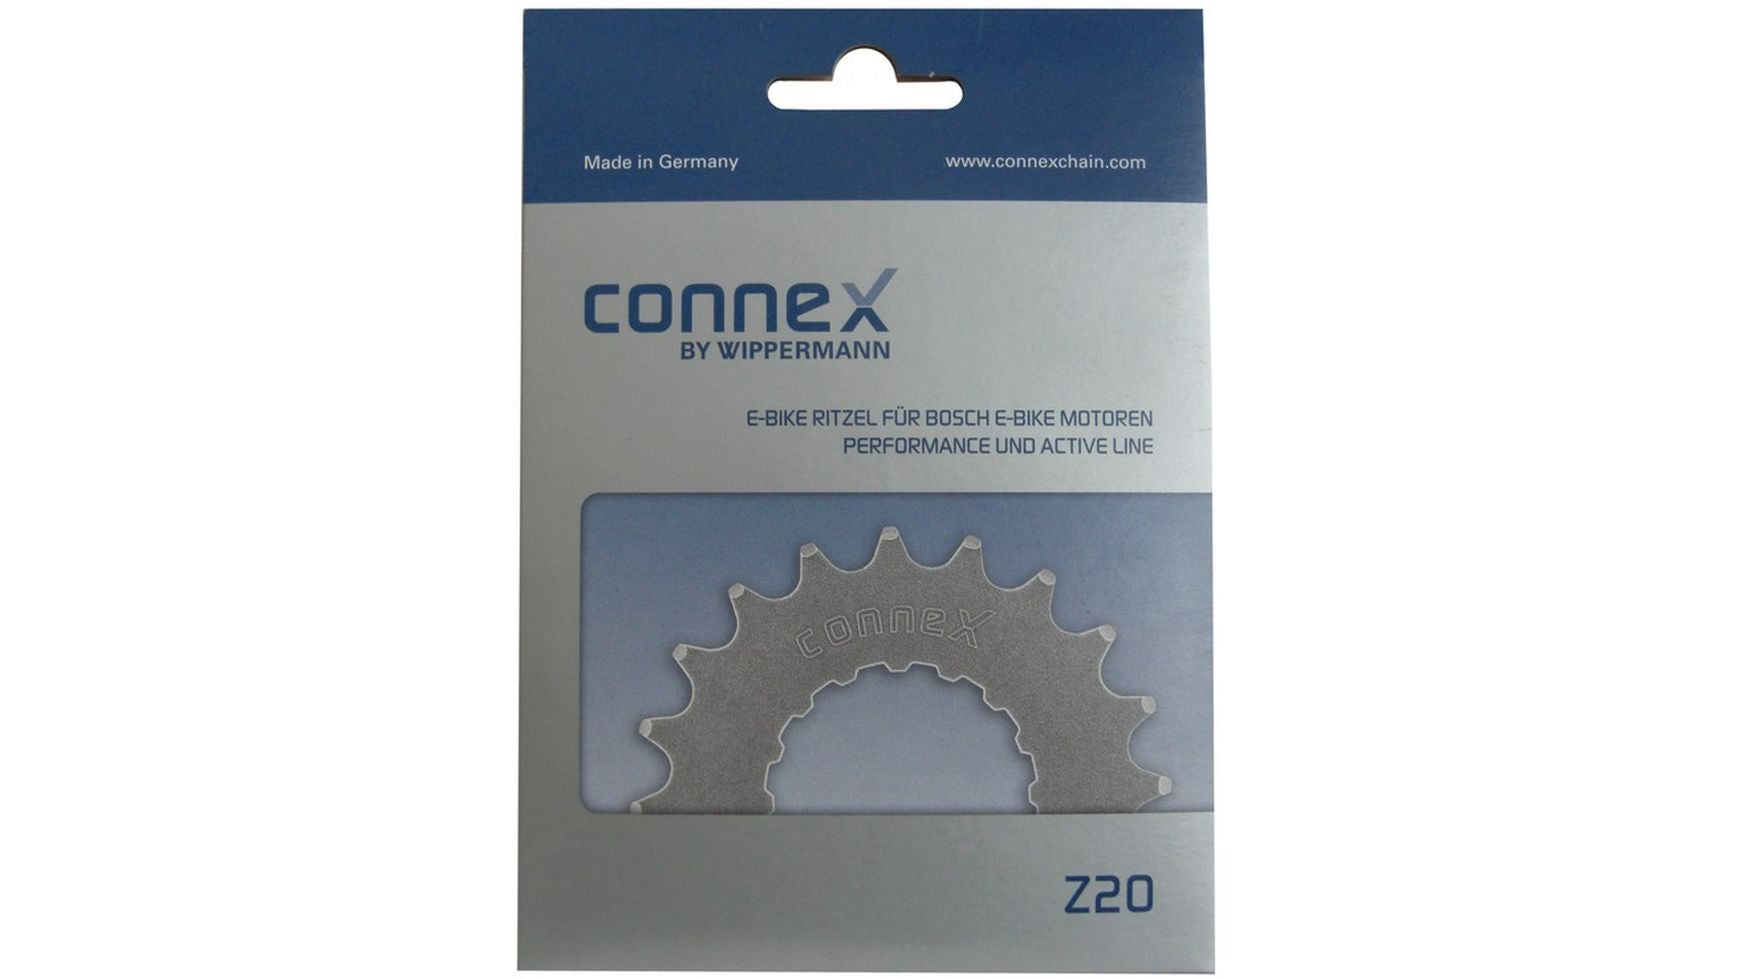 Connex 22 Zähne Ritzel Bosch von Connex